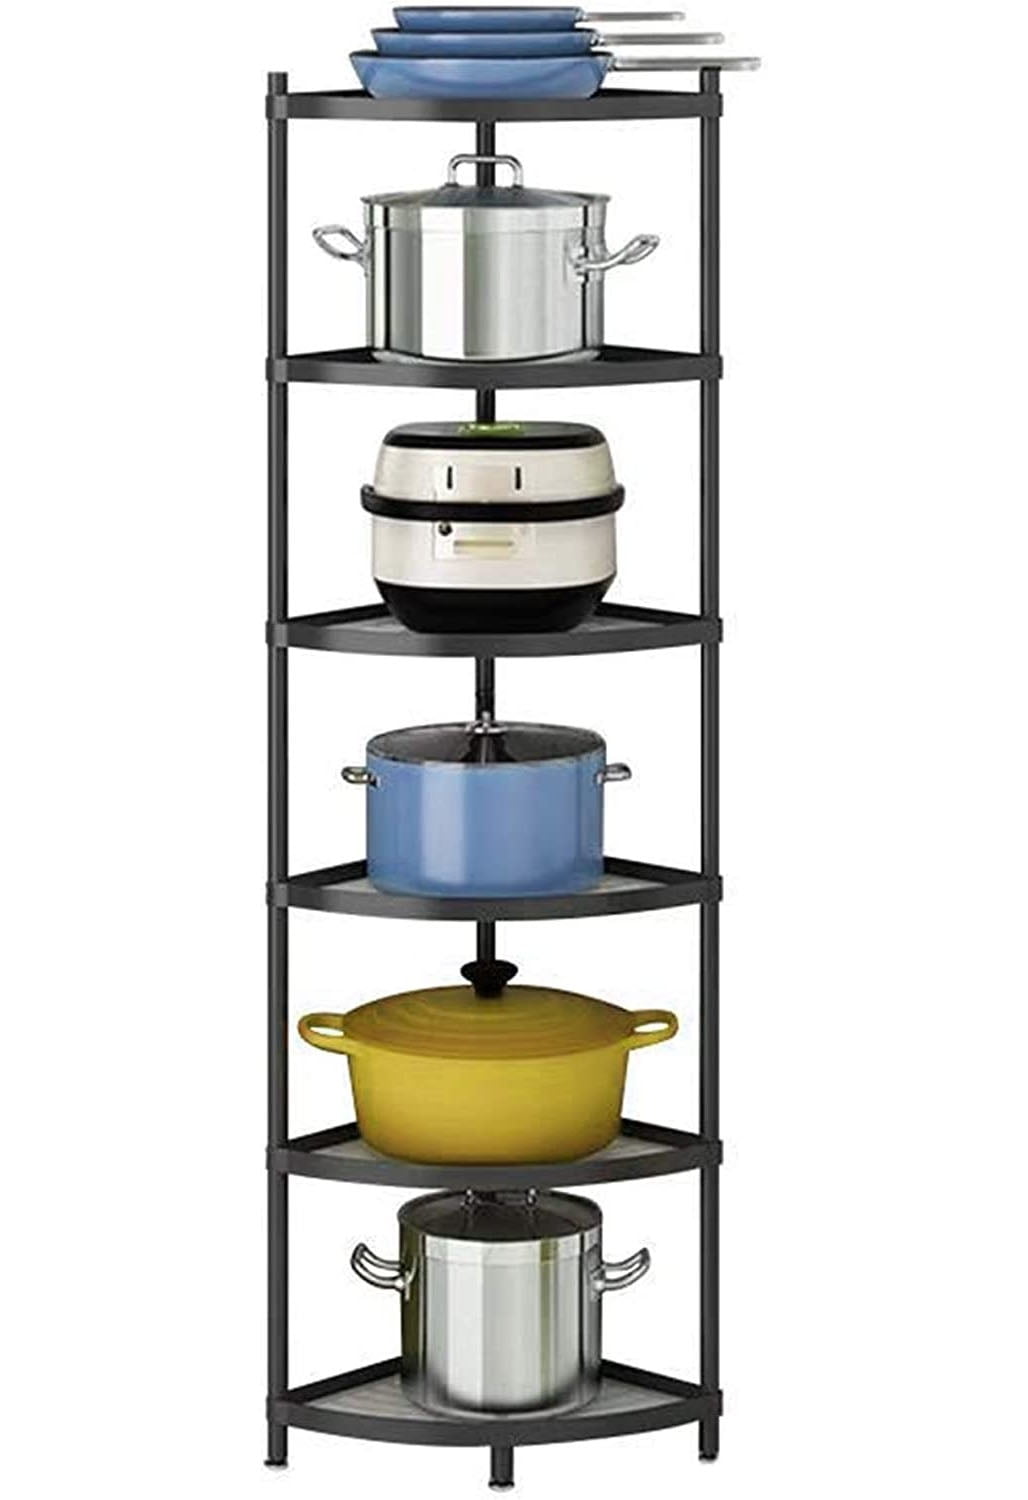 Standing Pot Racks, Kitchen Pot Stands